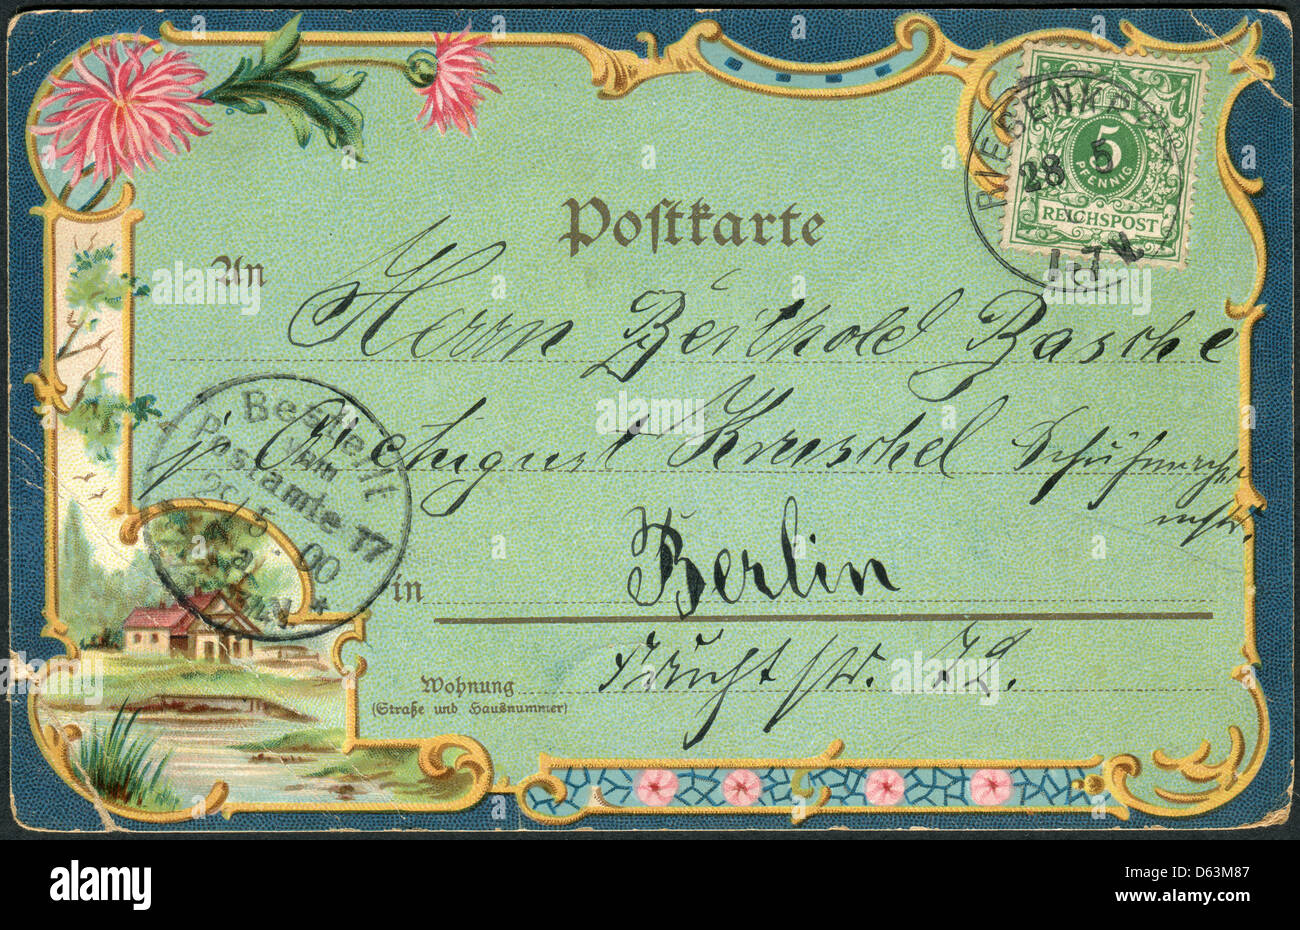 Alte deutsche Postkarte 1900. Zeigt einen Rahmen mit floralen ornament Stockfoto